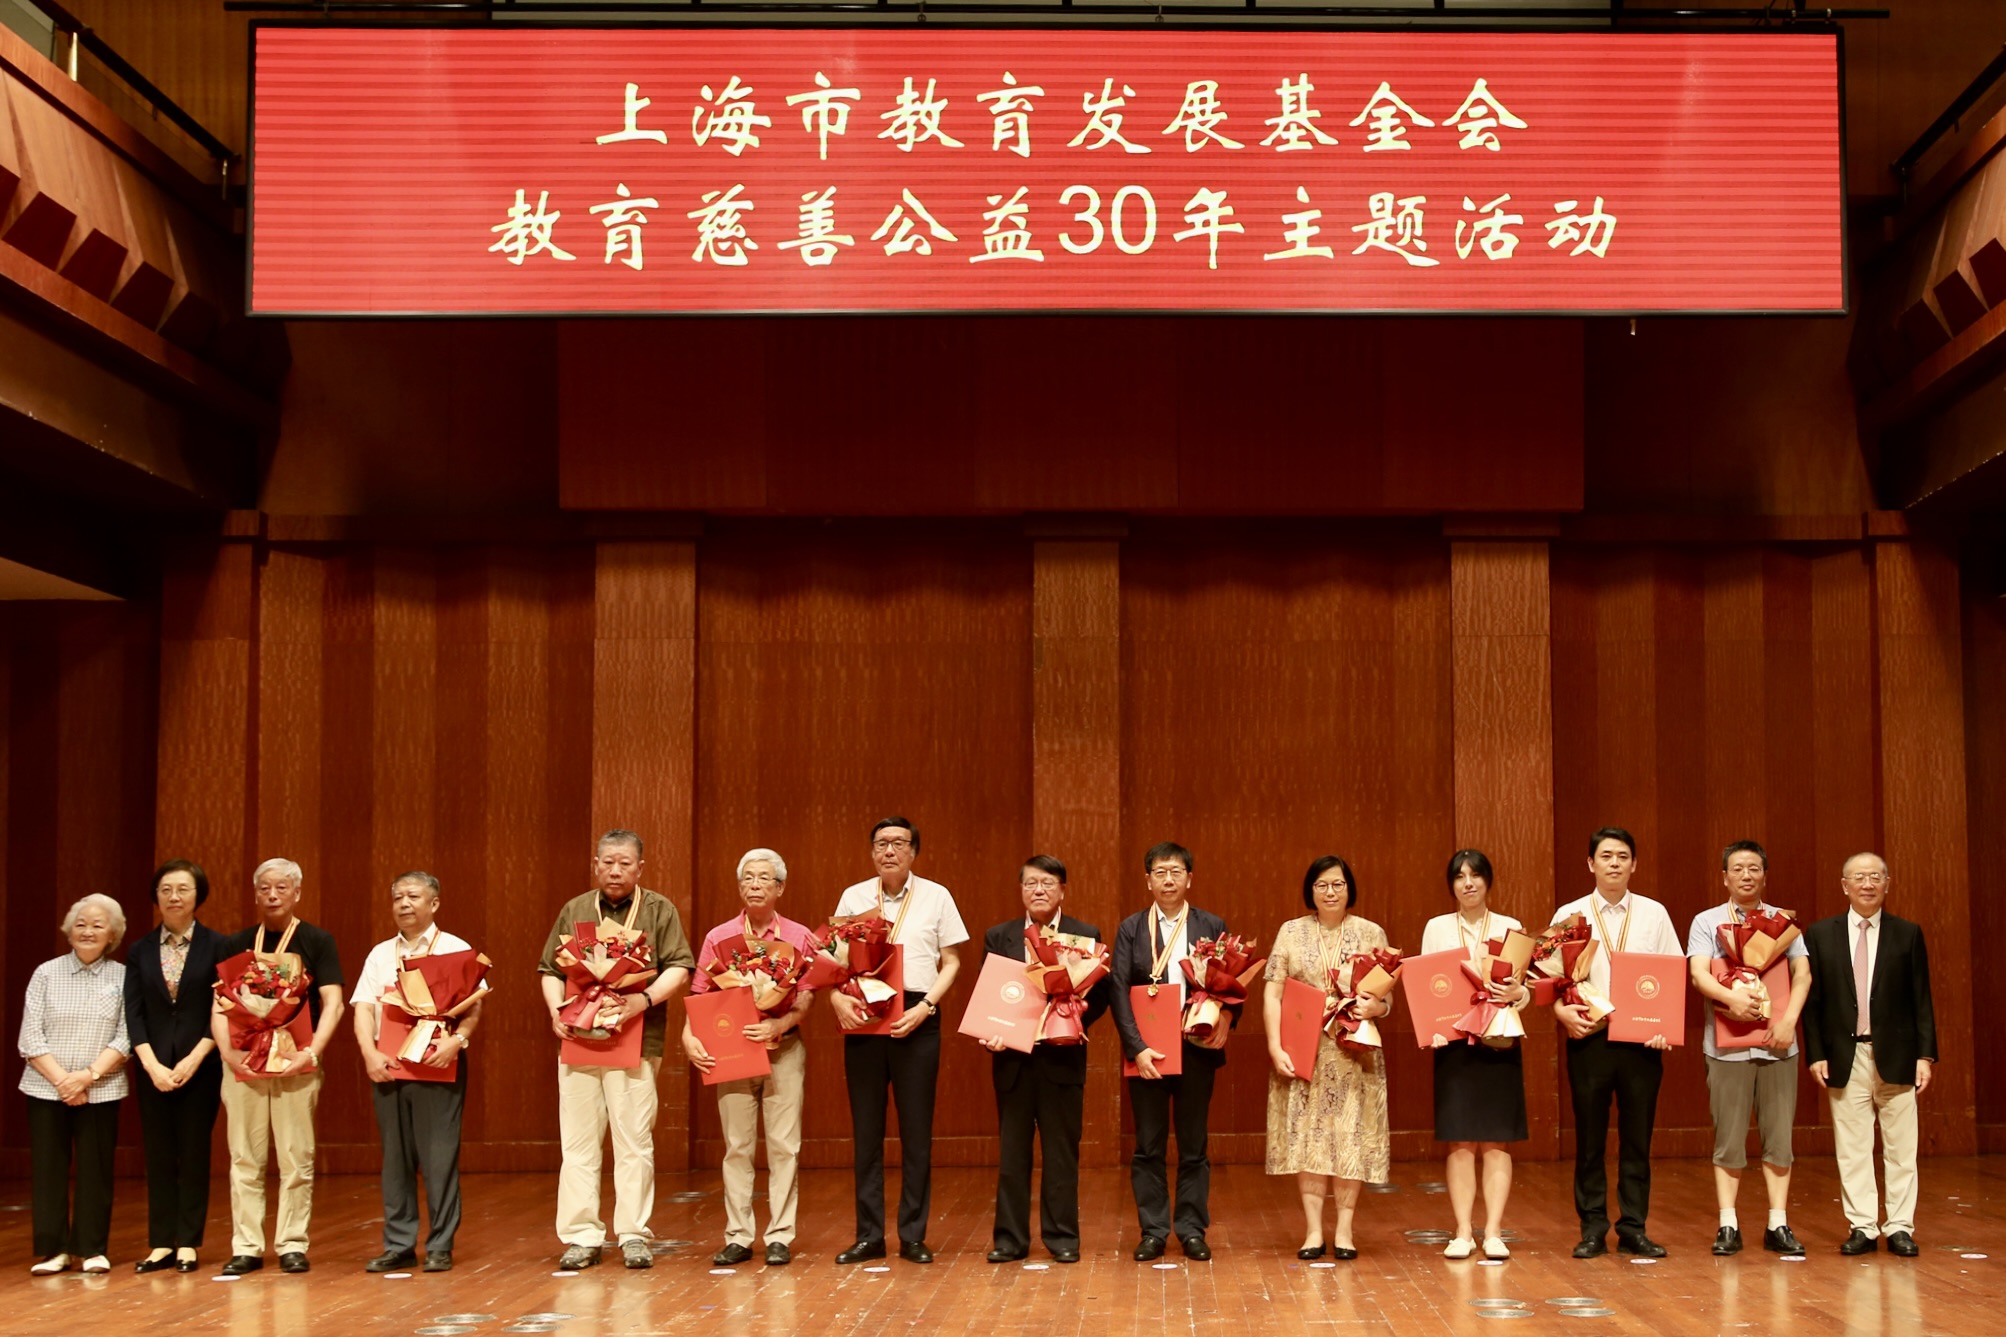 为“上海市教育发展基金会教育慈善公益30年30人”入选者及入选者代表颁发纪念章和荣誉证书2（郑逸洁 摄）.JPG